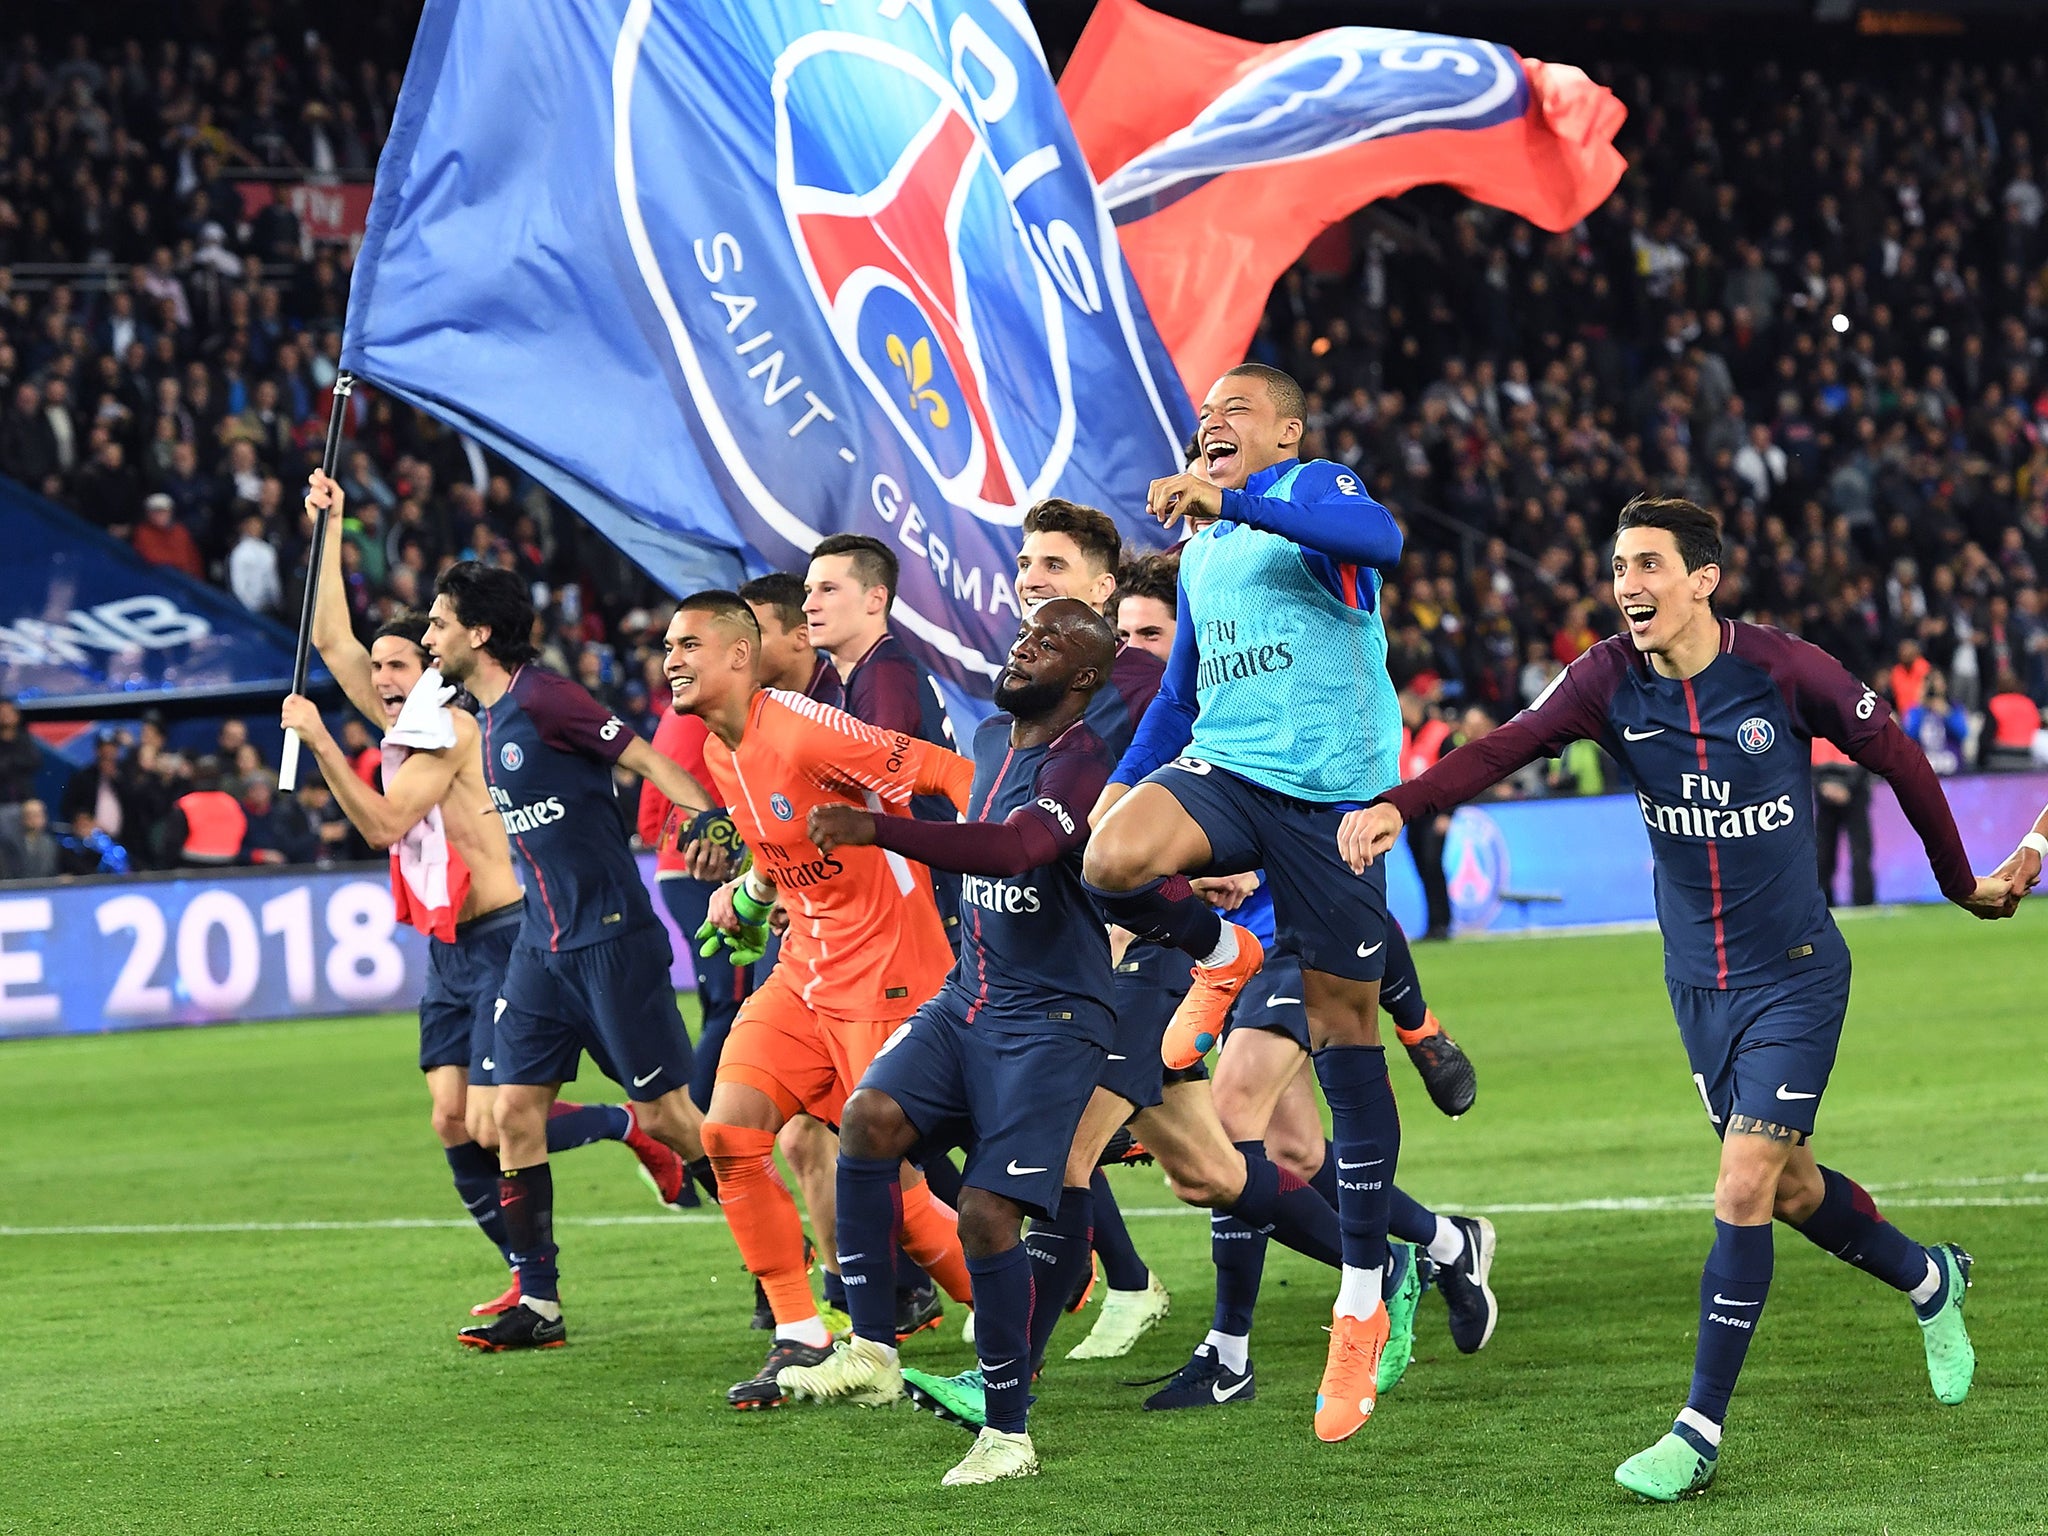 Paris Saint-Germain beat Monaco 7-1 to clinch the Ligue 1 title